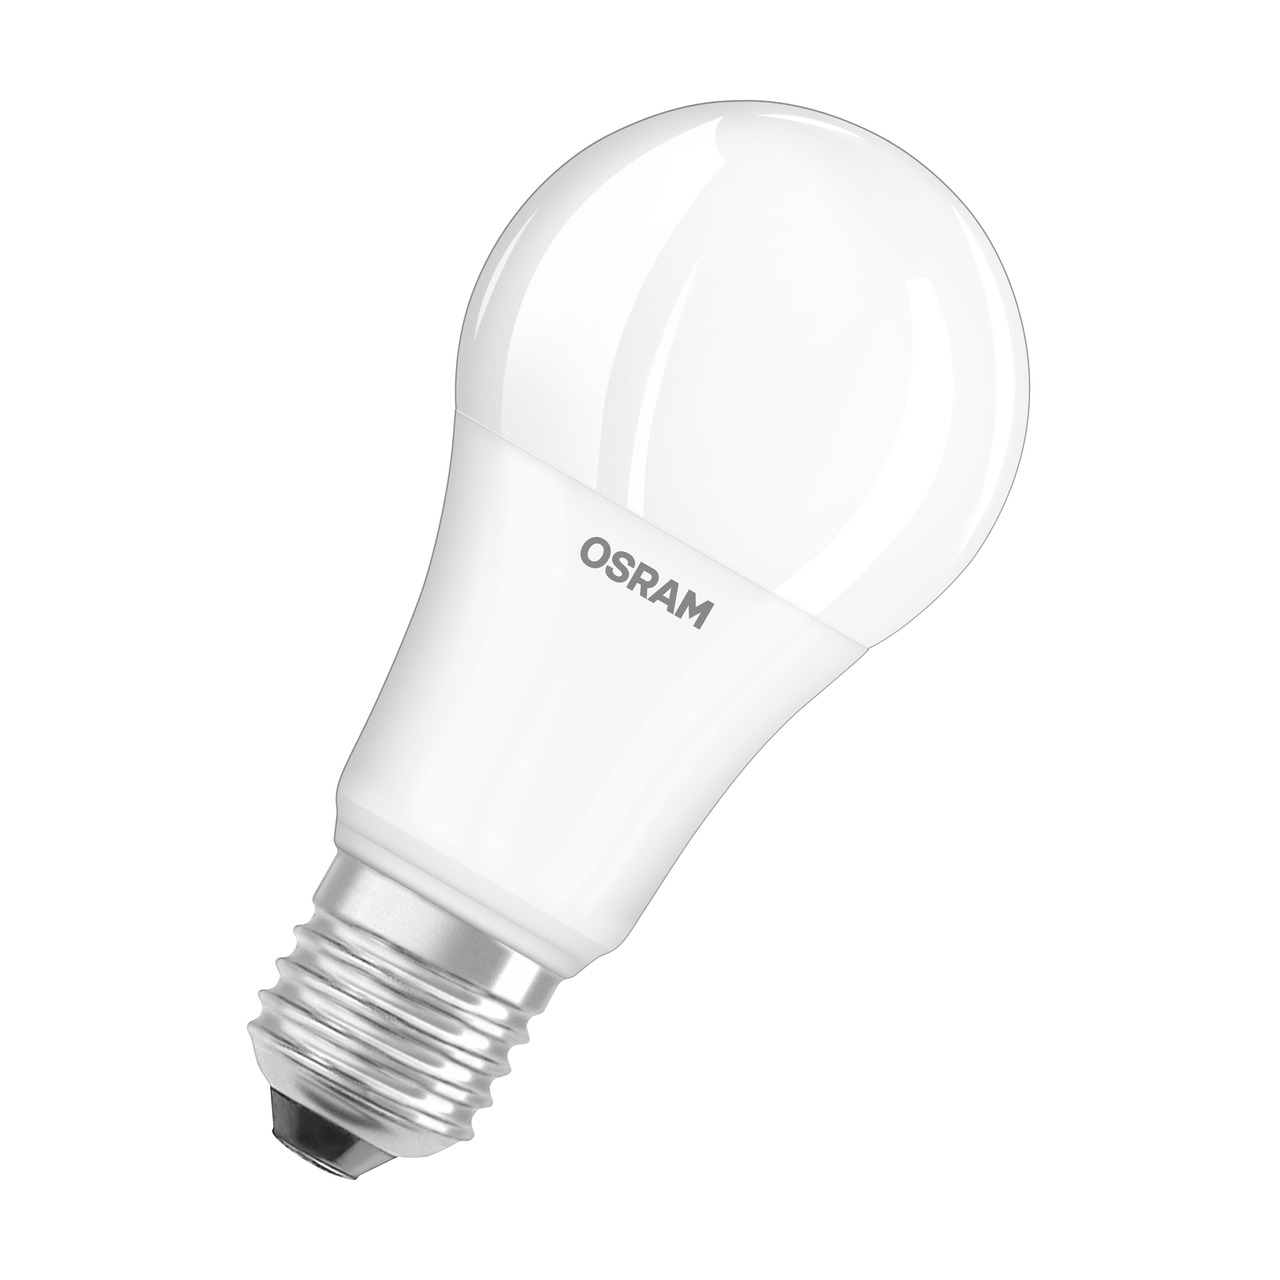 OSRAM 13-W-LED-Lampe A60- E27- 1521 lm- kaltweiss- matt unter Beleuchtung